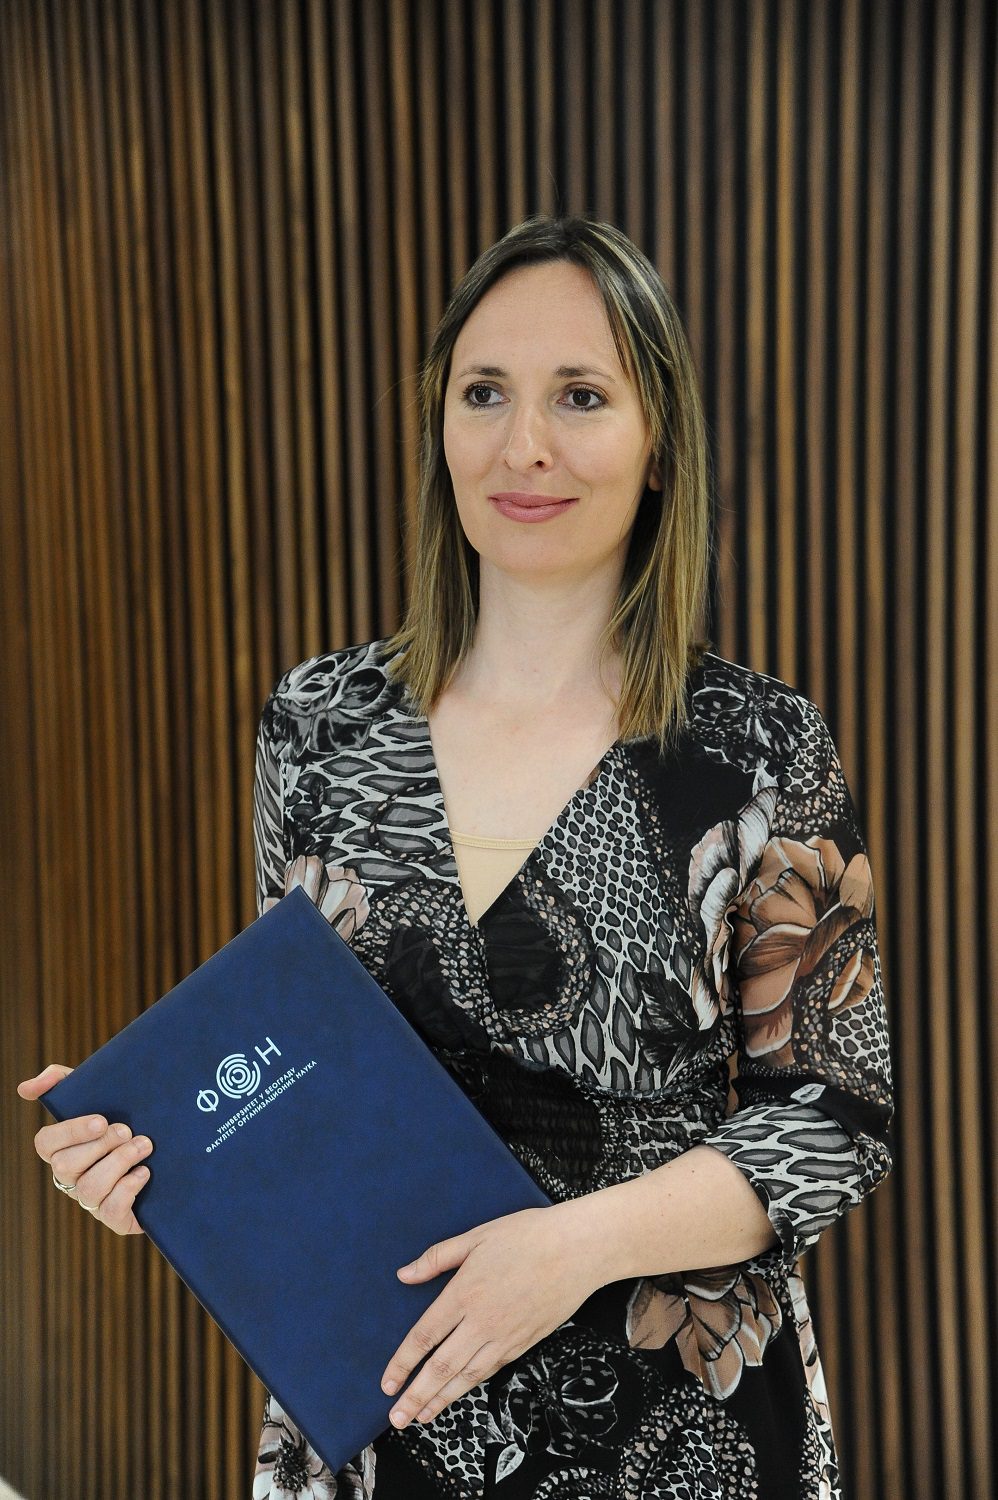 Rosanda Milatovic Skoric, General Manager for SAS in Adriatic Region